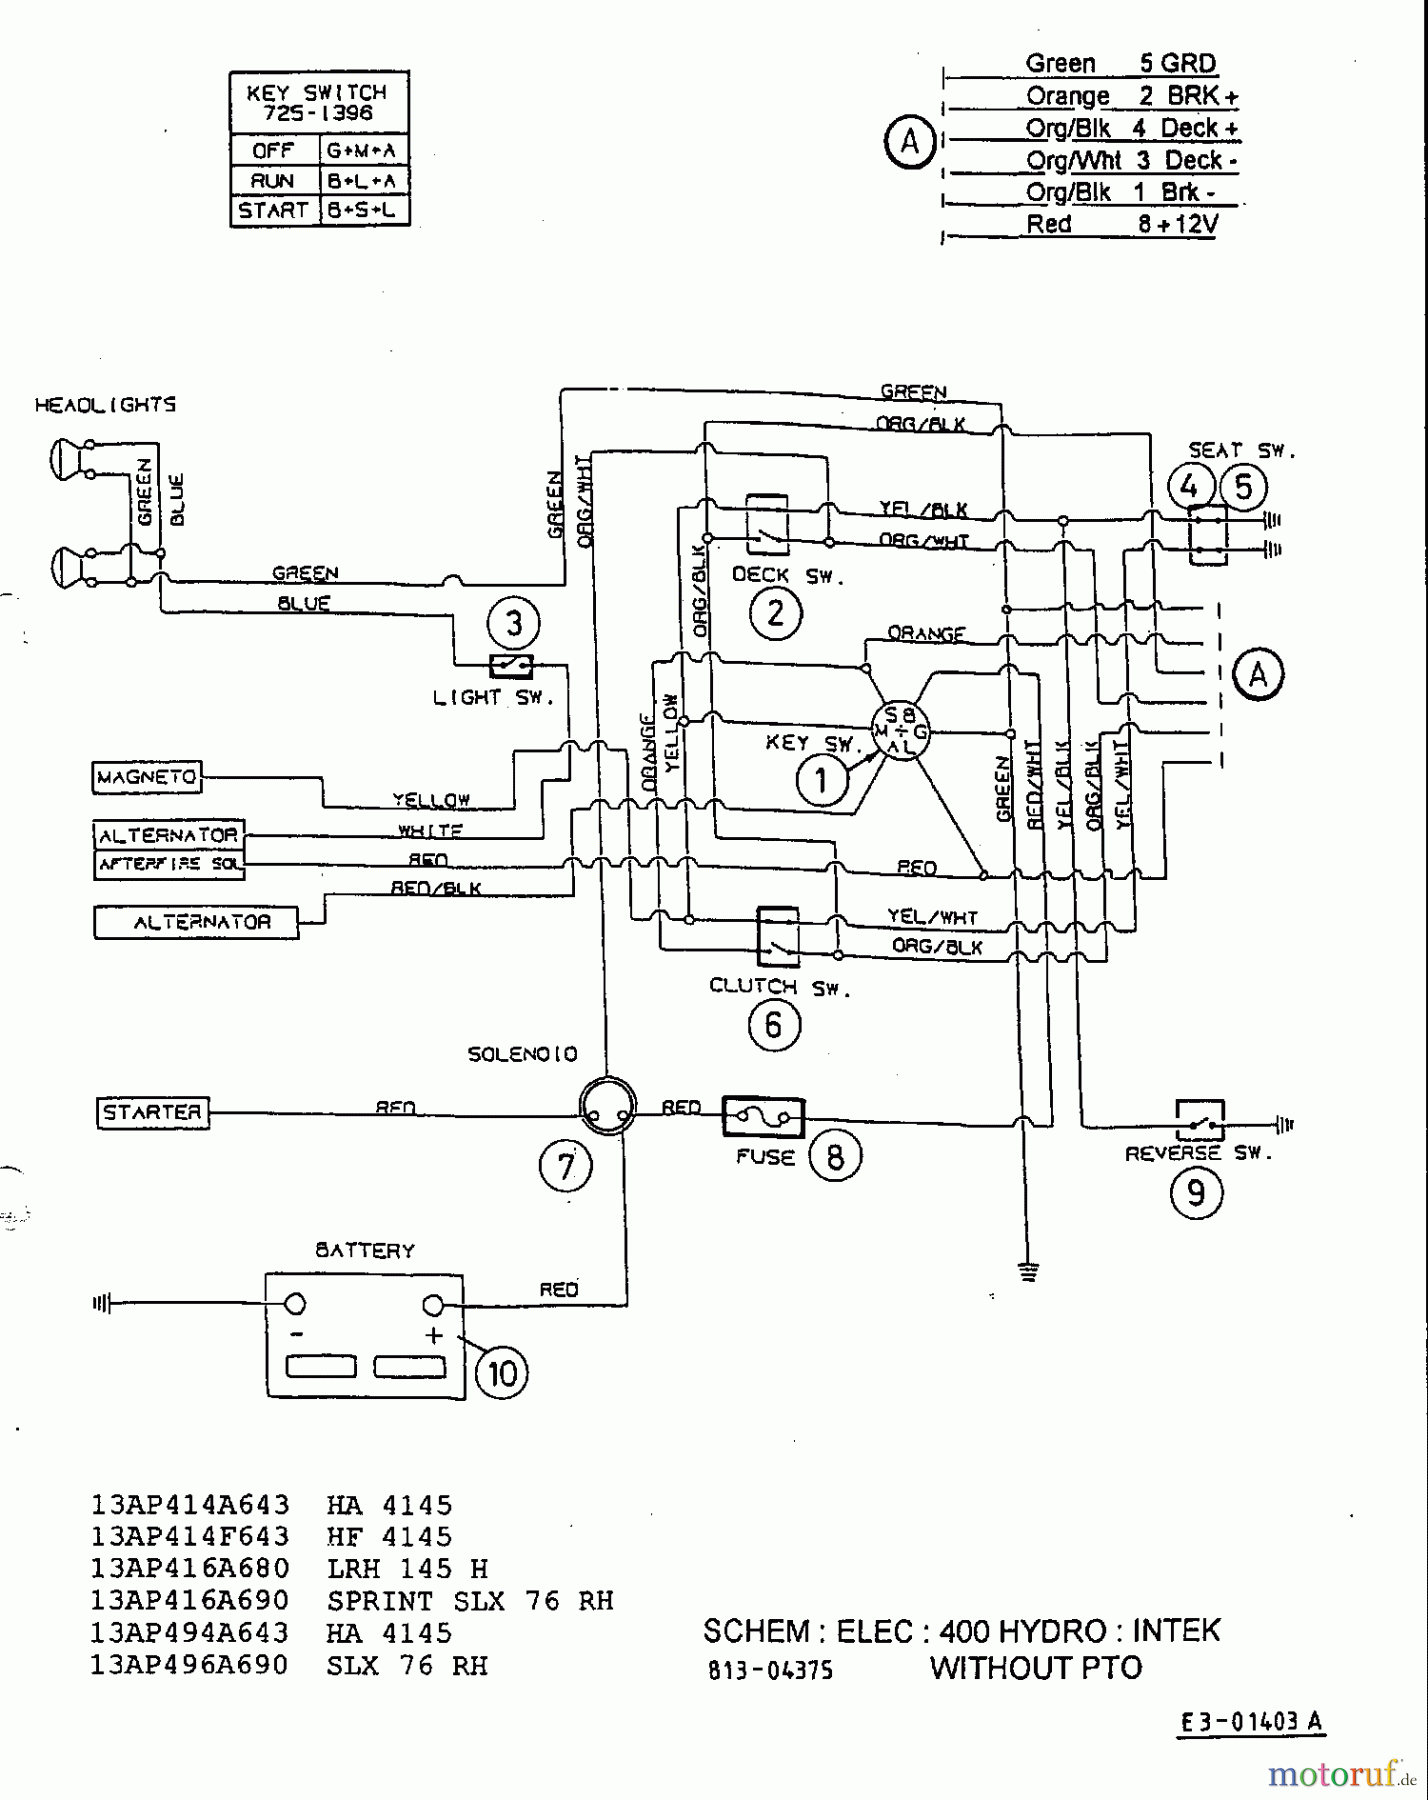  Mastercut Tracteurs de pelouse 13/92 H 13AA410E659  (2000) Plan électrique Intek sans embrayage électromagnétique